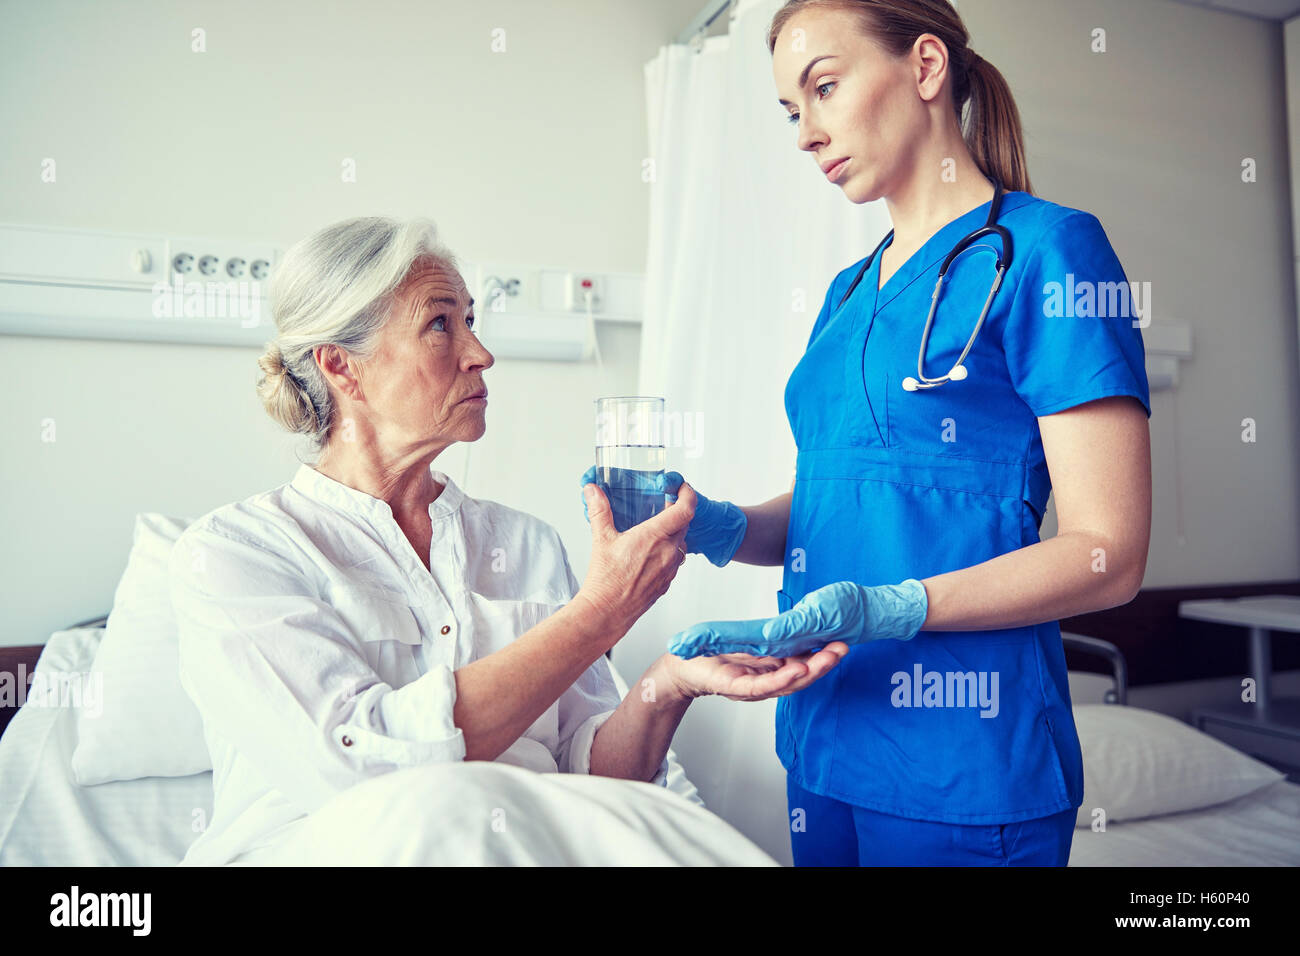 Медицинский уход за больным pansionat help. Медсестра с больными. Медицинская сестра и пациент. Медсестра помогает пациенту. Стационар для пожилых.